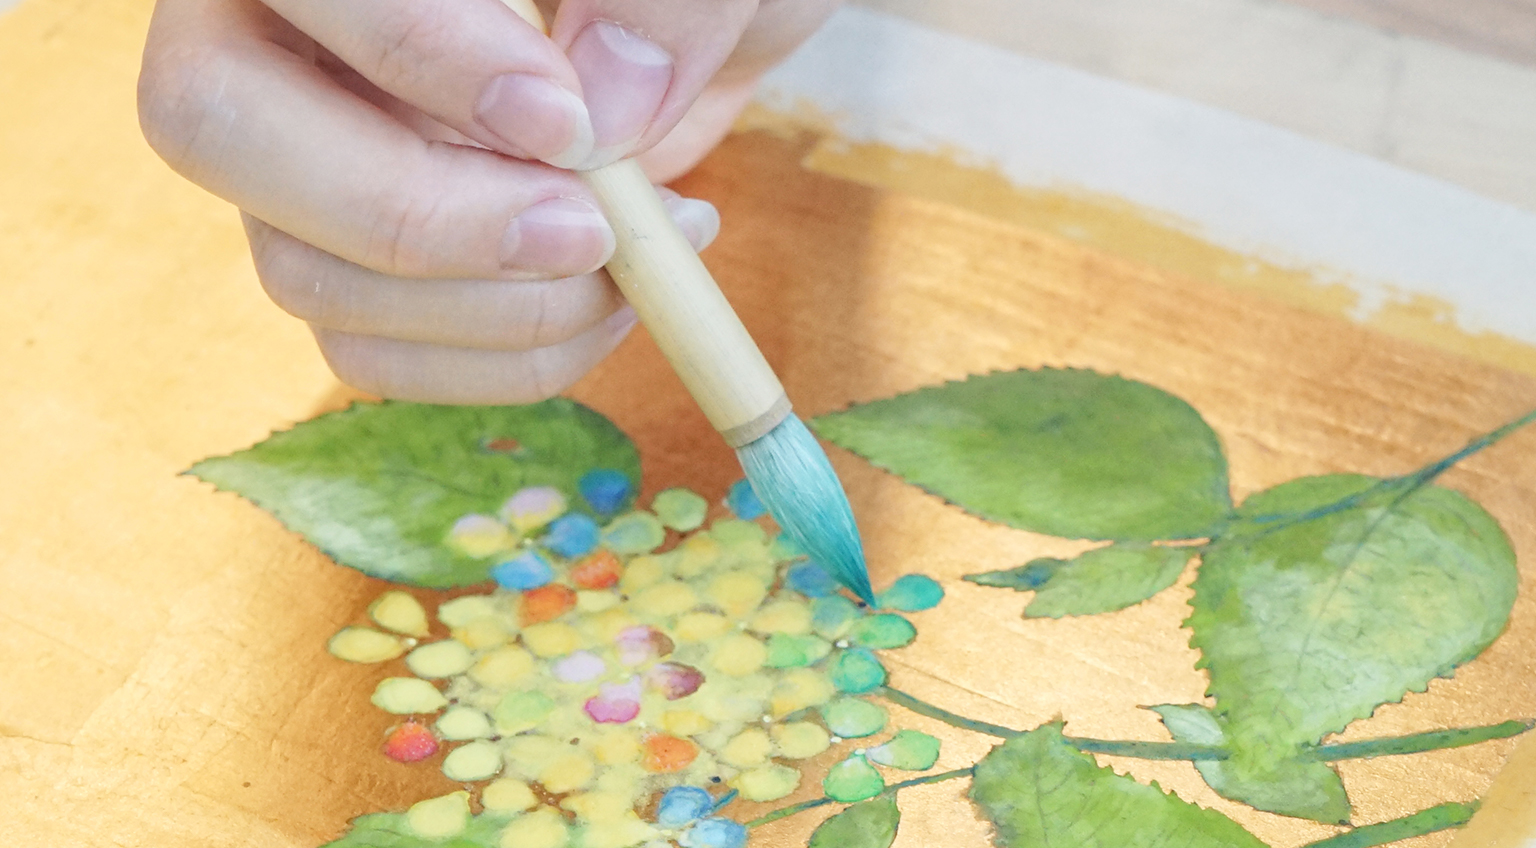 日本画 水墨画コース 絵画教室アトリエ オモ3 東京 表参道駅から徒歩3分の絵画教室